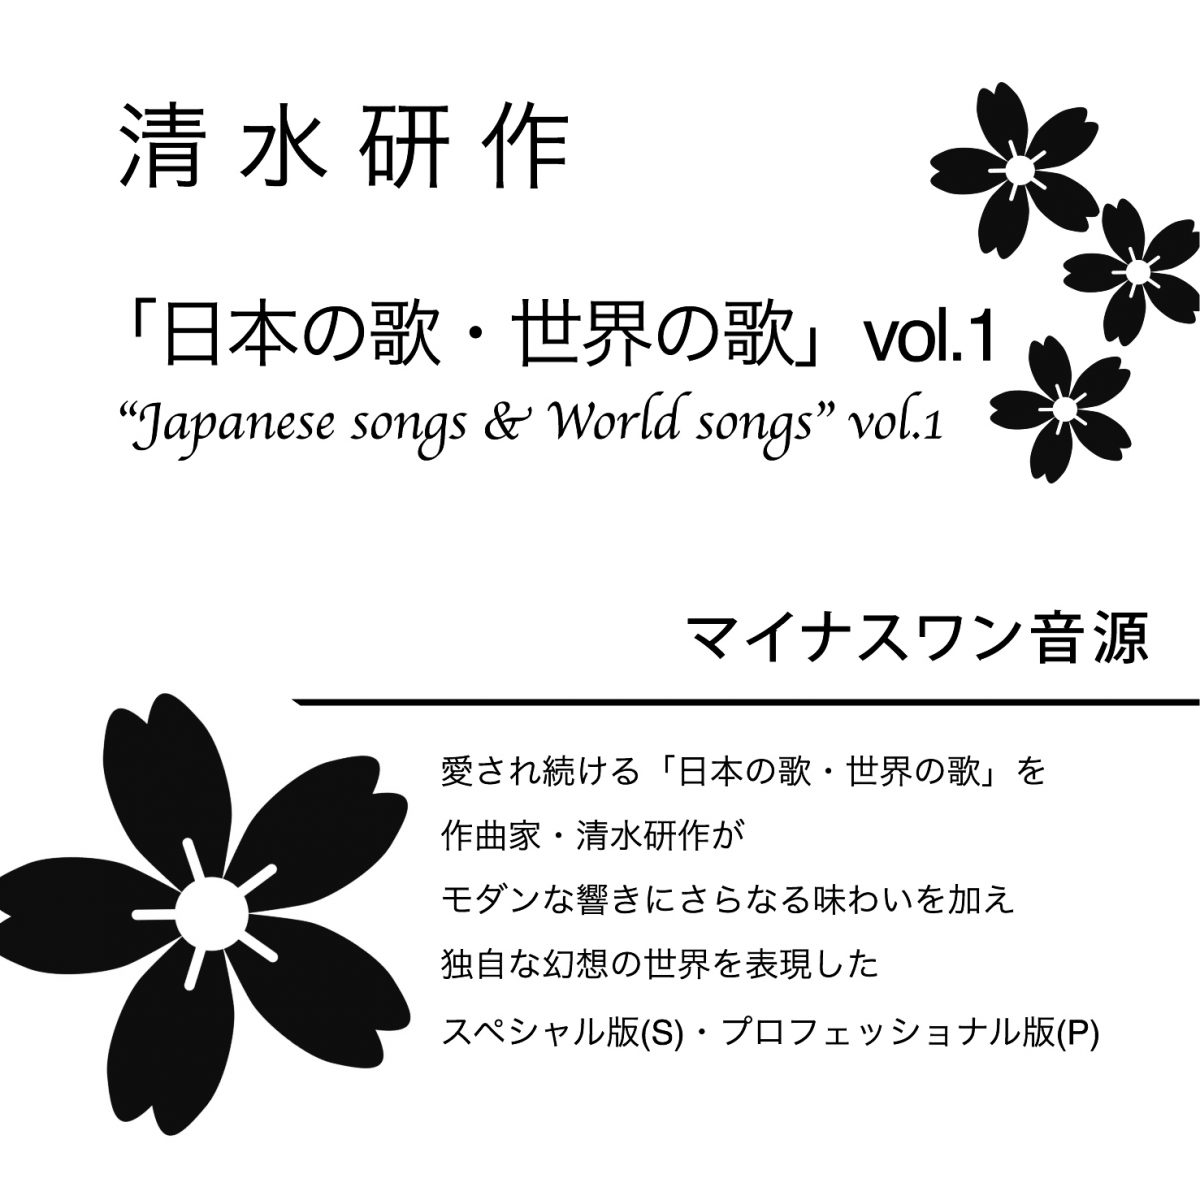 【マイナスワン音源】清水研作 『日本の歌・世界の歌』 Vol.1